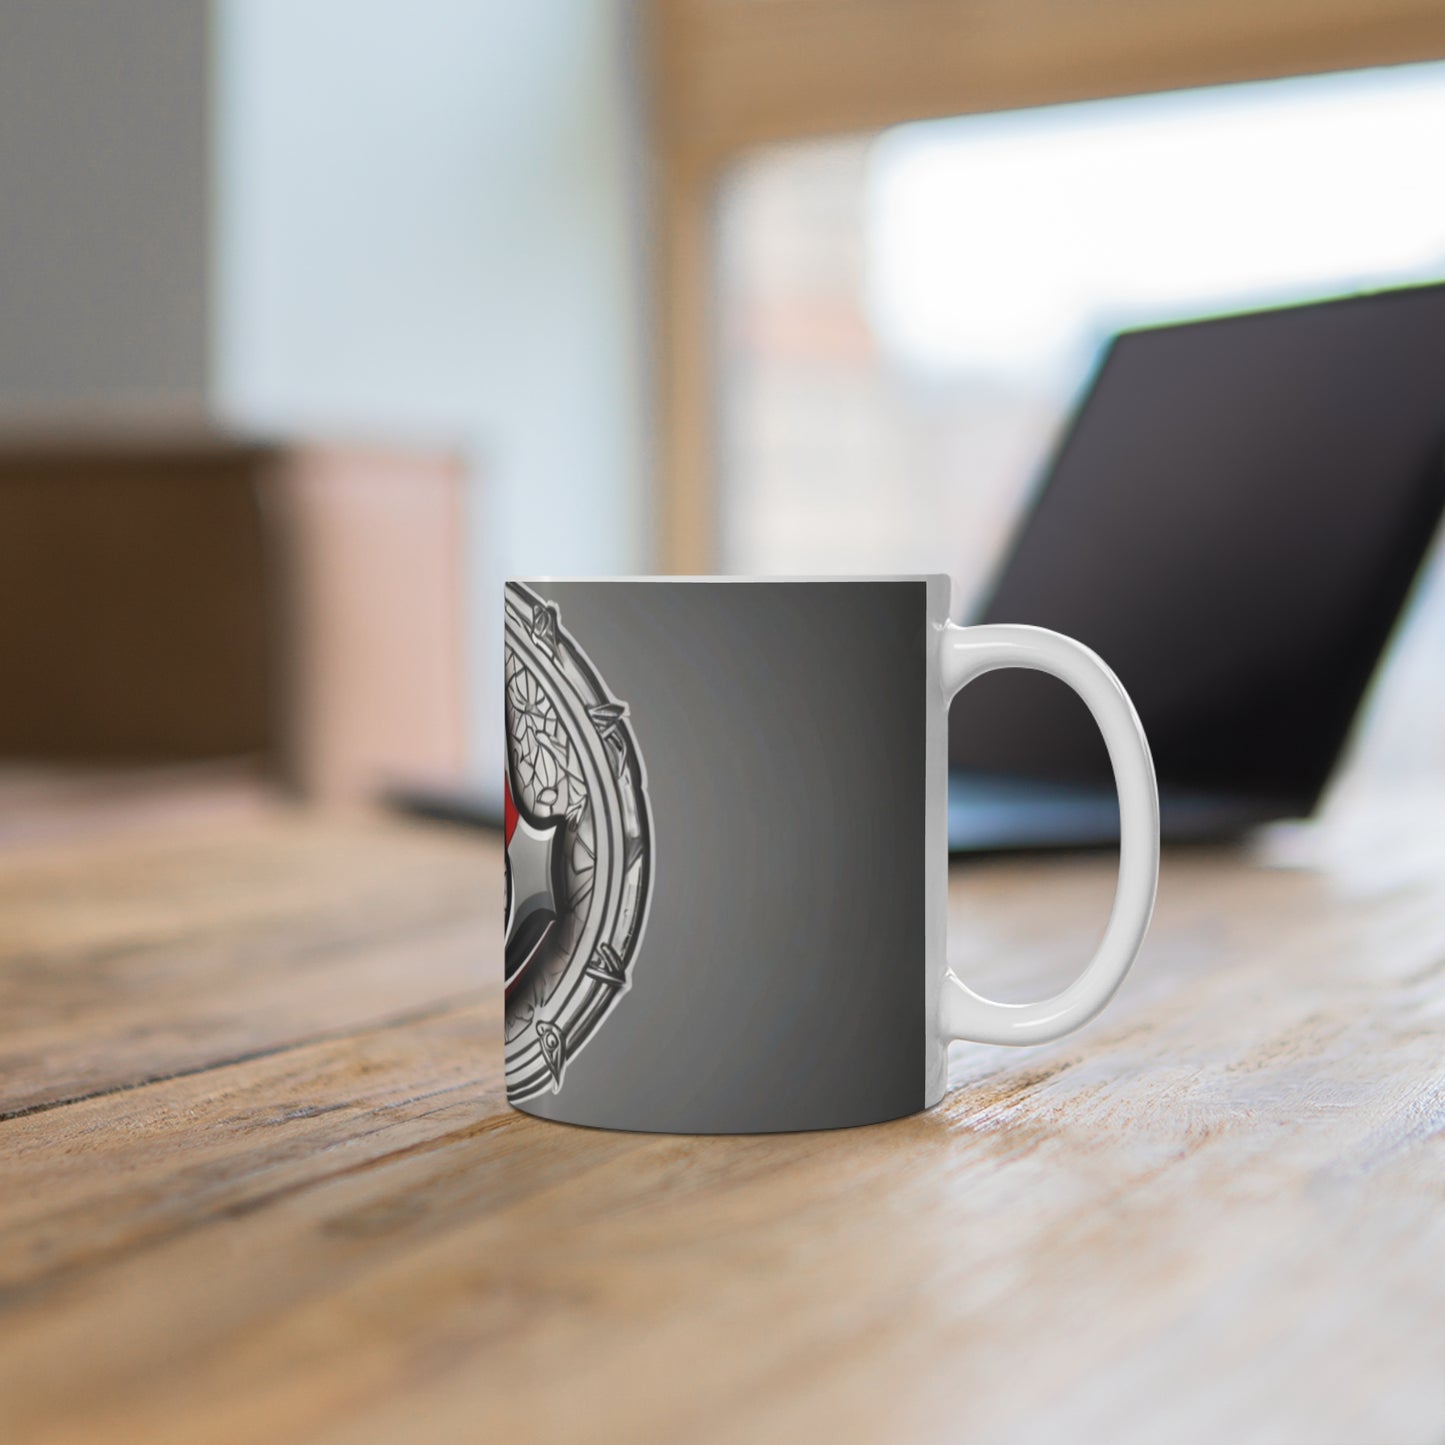 Assassin's Creed Logo Mug - Ceramic Coffee Mug 11oz